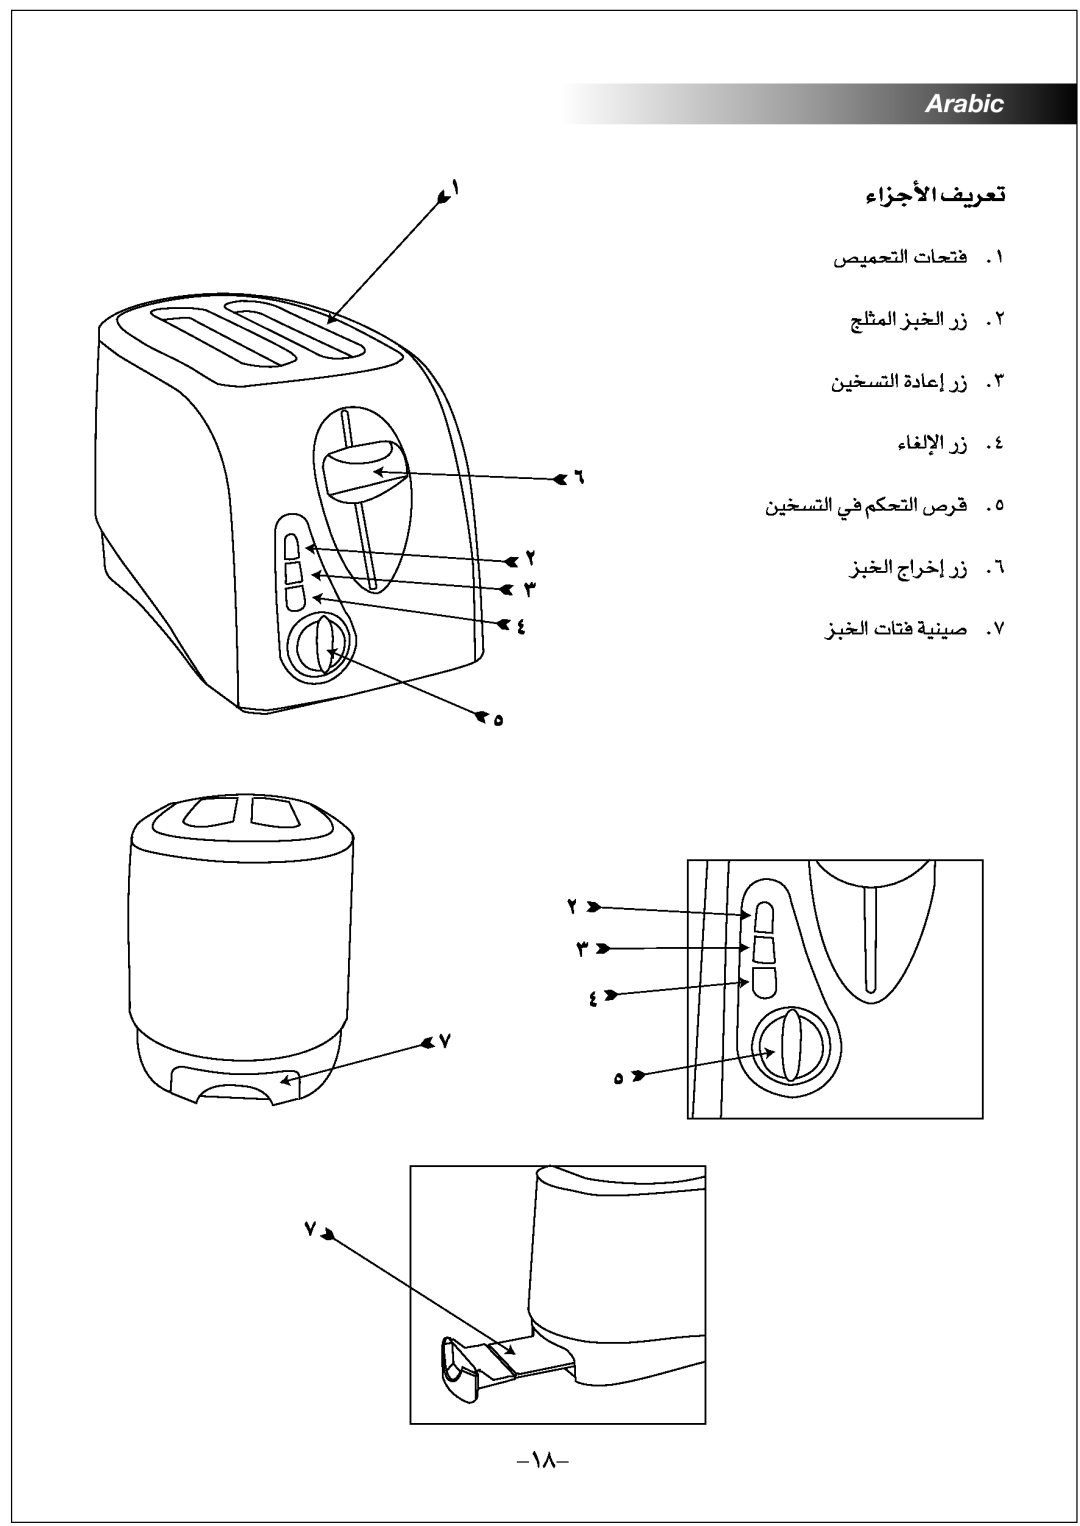 Black & Decker ET202 manual Arabic, §e«¡ « ¢Fd¥n, LOh∞∑ « U‹≠∑, ºªOs∞∑« w≠ Jr∞∑ « Æd’ 